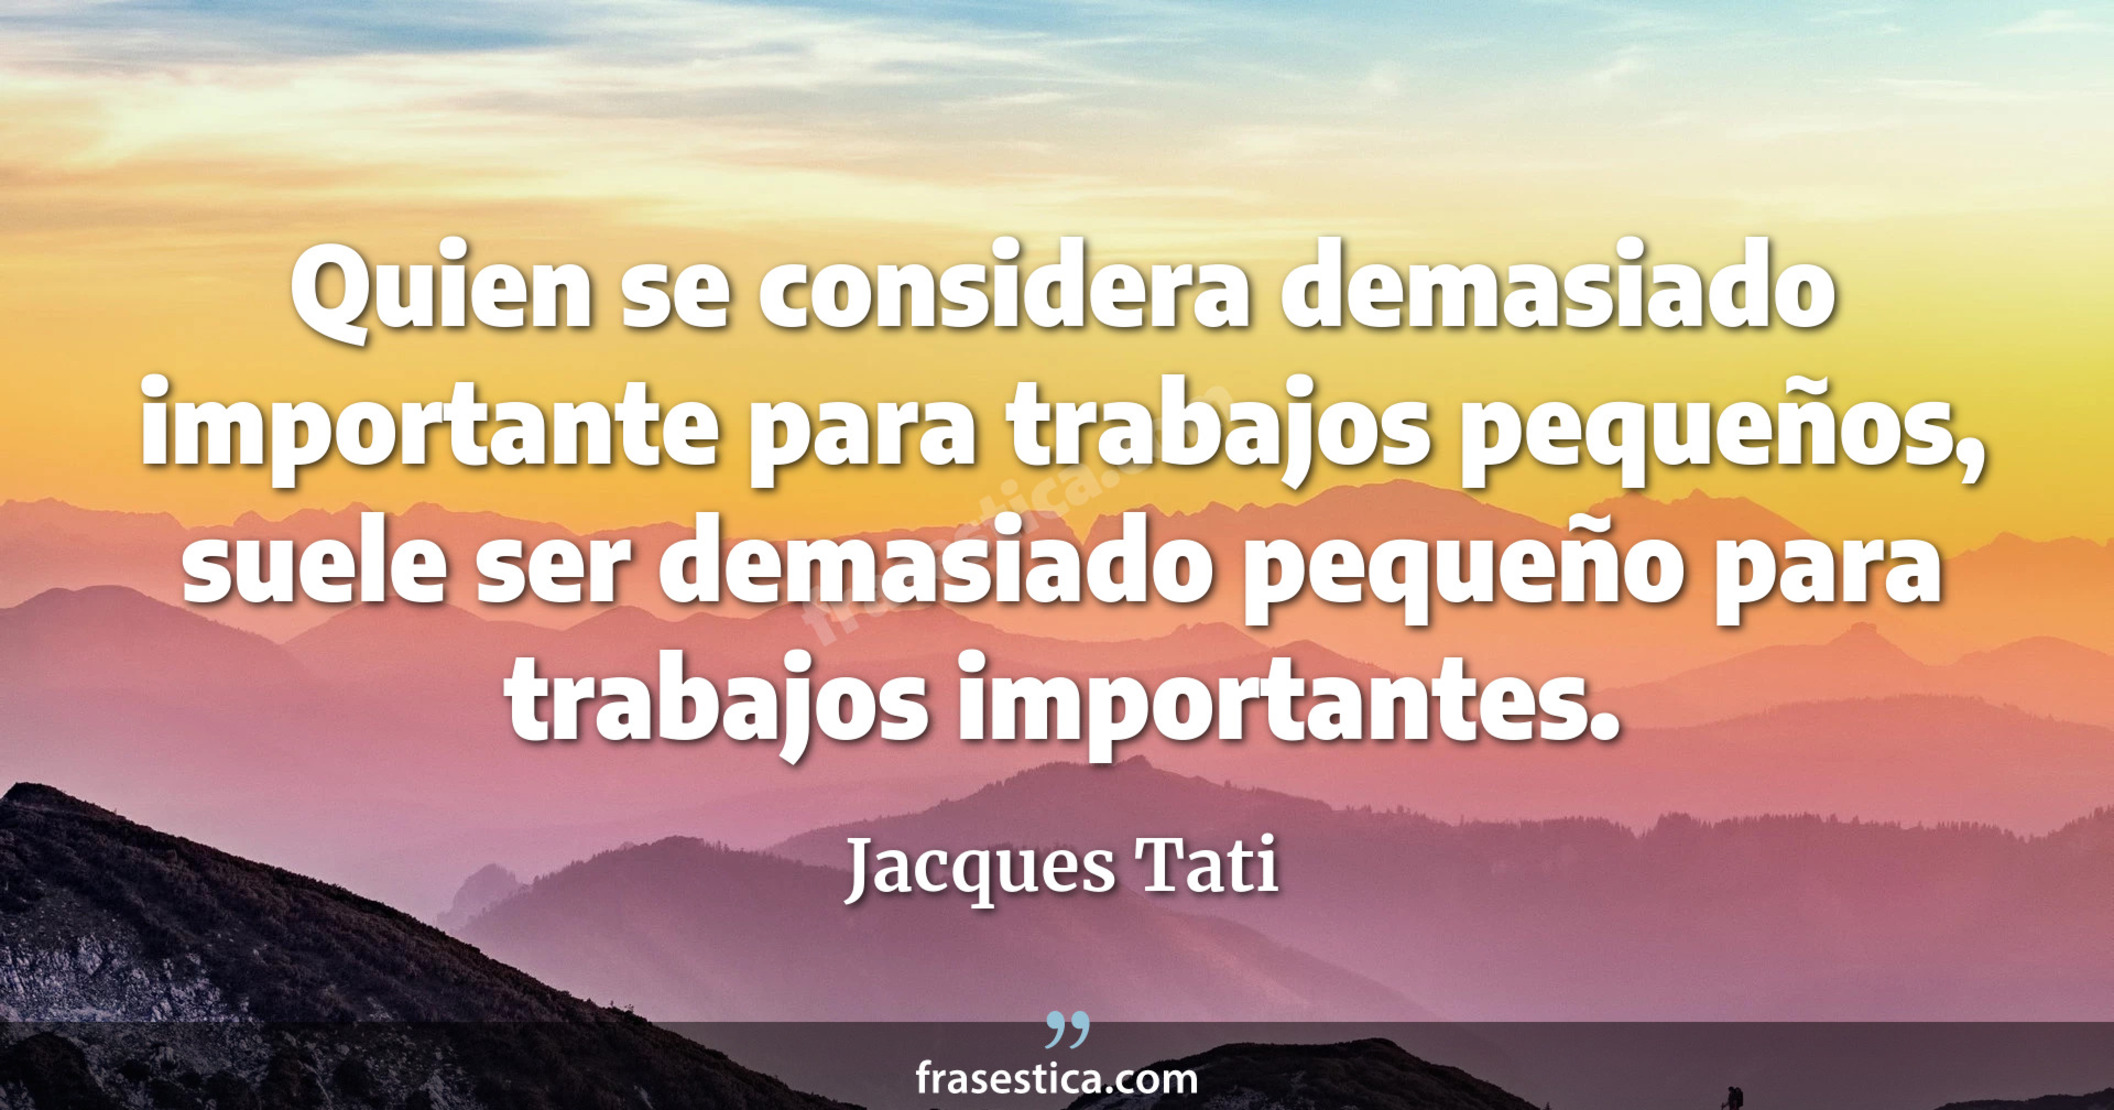 Quien se considera demasiado importante para trabajos pequeños, suele ser demasiado pequeño para trabajos importantes. - Jacques Tati